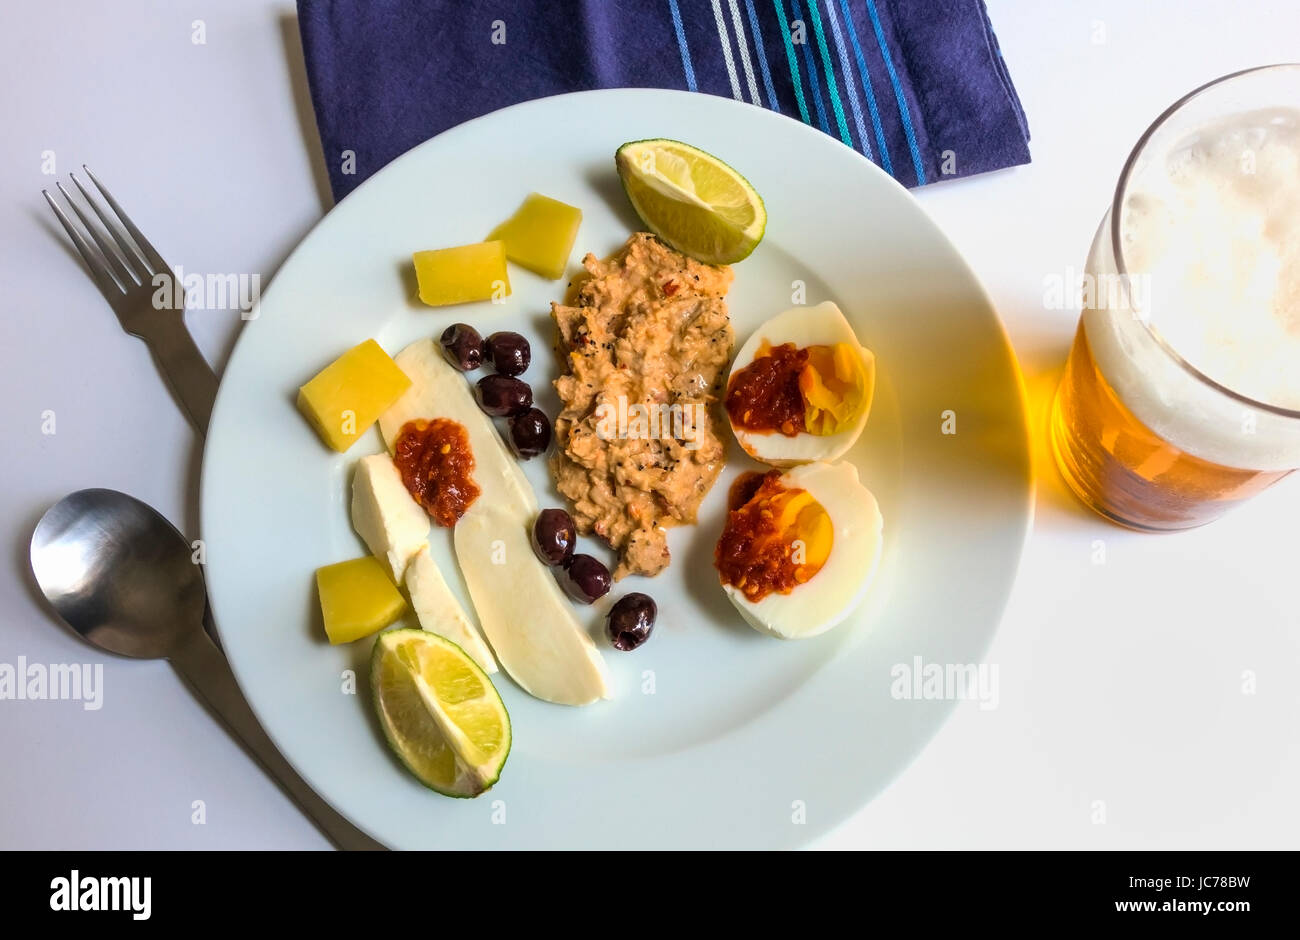 Eine kalte Mahlzeit für den Sommer: Würziger Thunfisch-Salat, hartgekochtes Ei, Mozzarella, Cheddar-Käse, Oliven, mit heißer Sauce, Limette und Bier Stockfoto